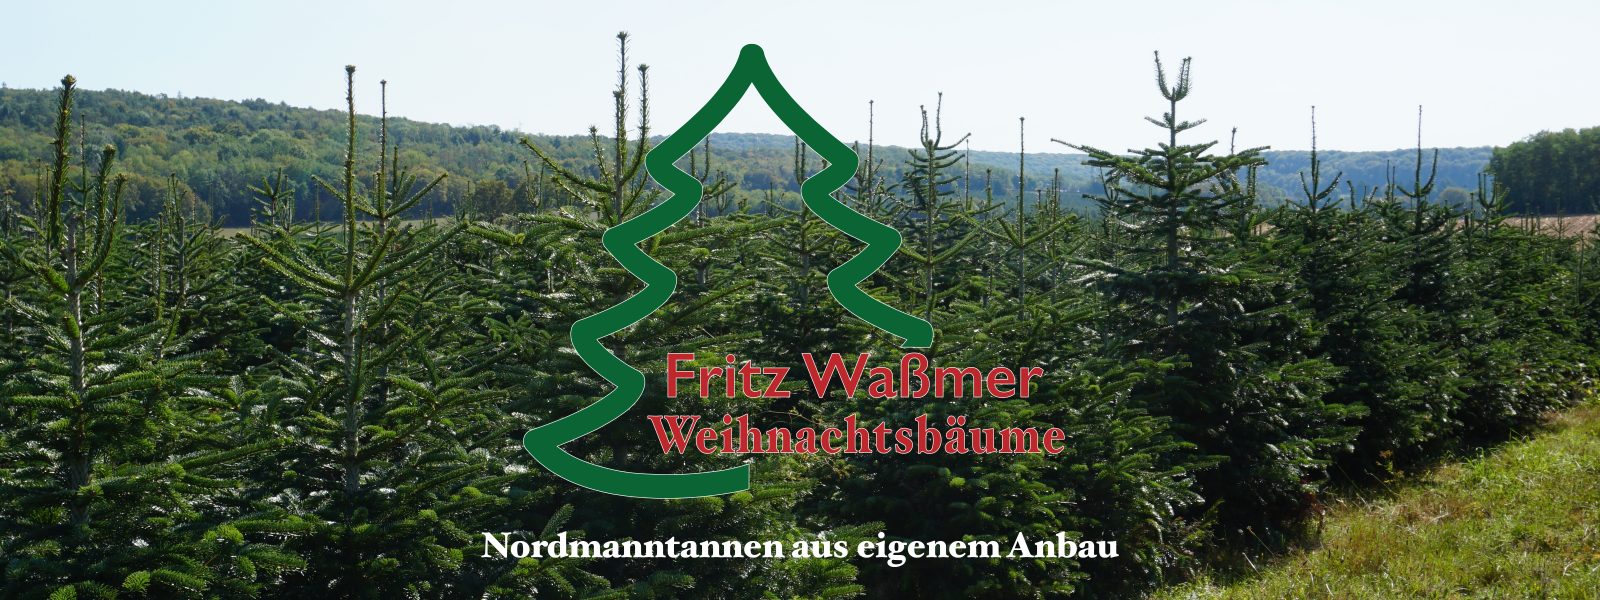 Header-Wassmer-Weihnachtsbaeume2-2000x600px